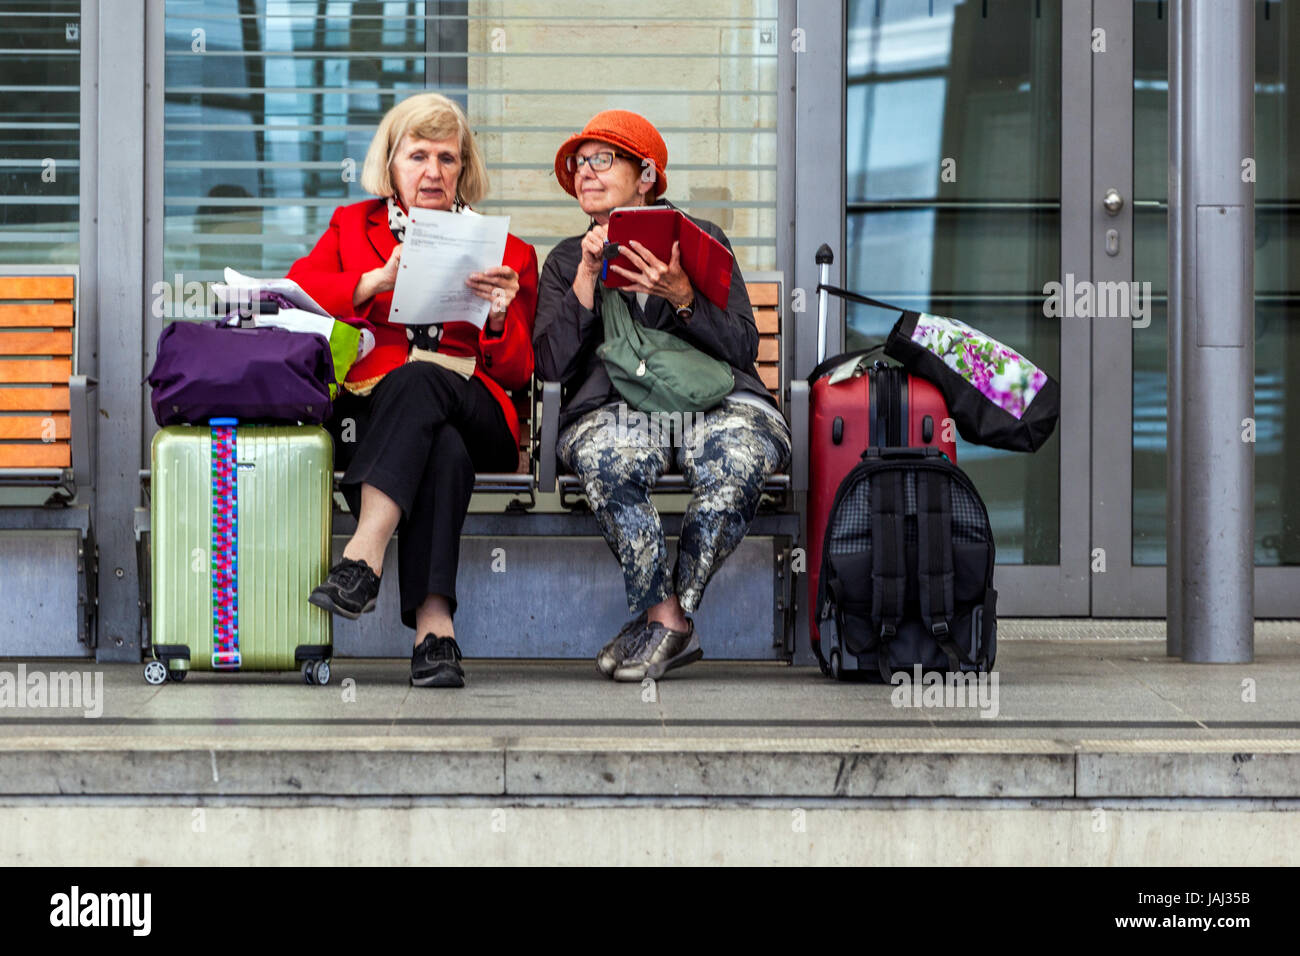 Zwei ältere Frauen mit Koffern auf der Bank sitzen und warten auf einen  Zug, Hauptbahnhof, Dresden, Sachsen, Deutschland Stockfotografie - Alamy